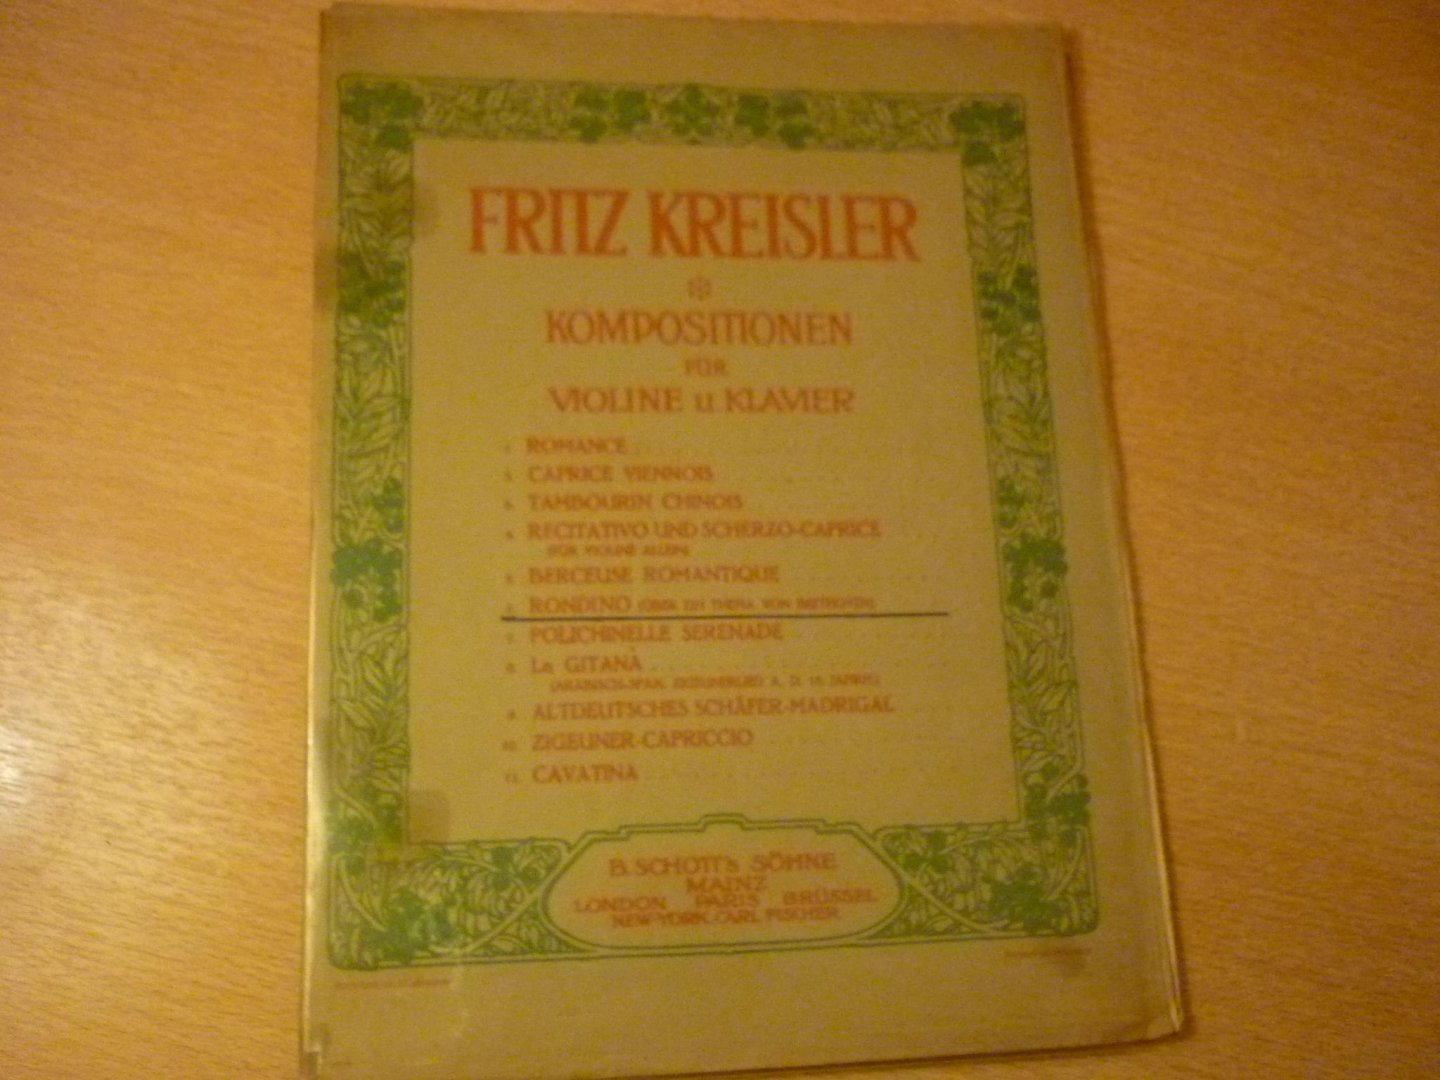 Kreisler; Fritz - Rondino; uber ein thema von Beethoven